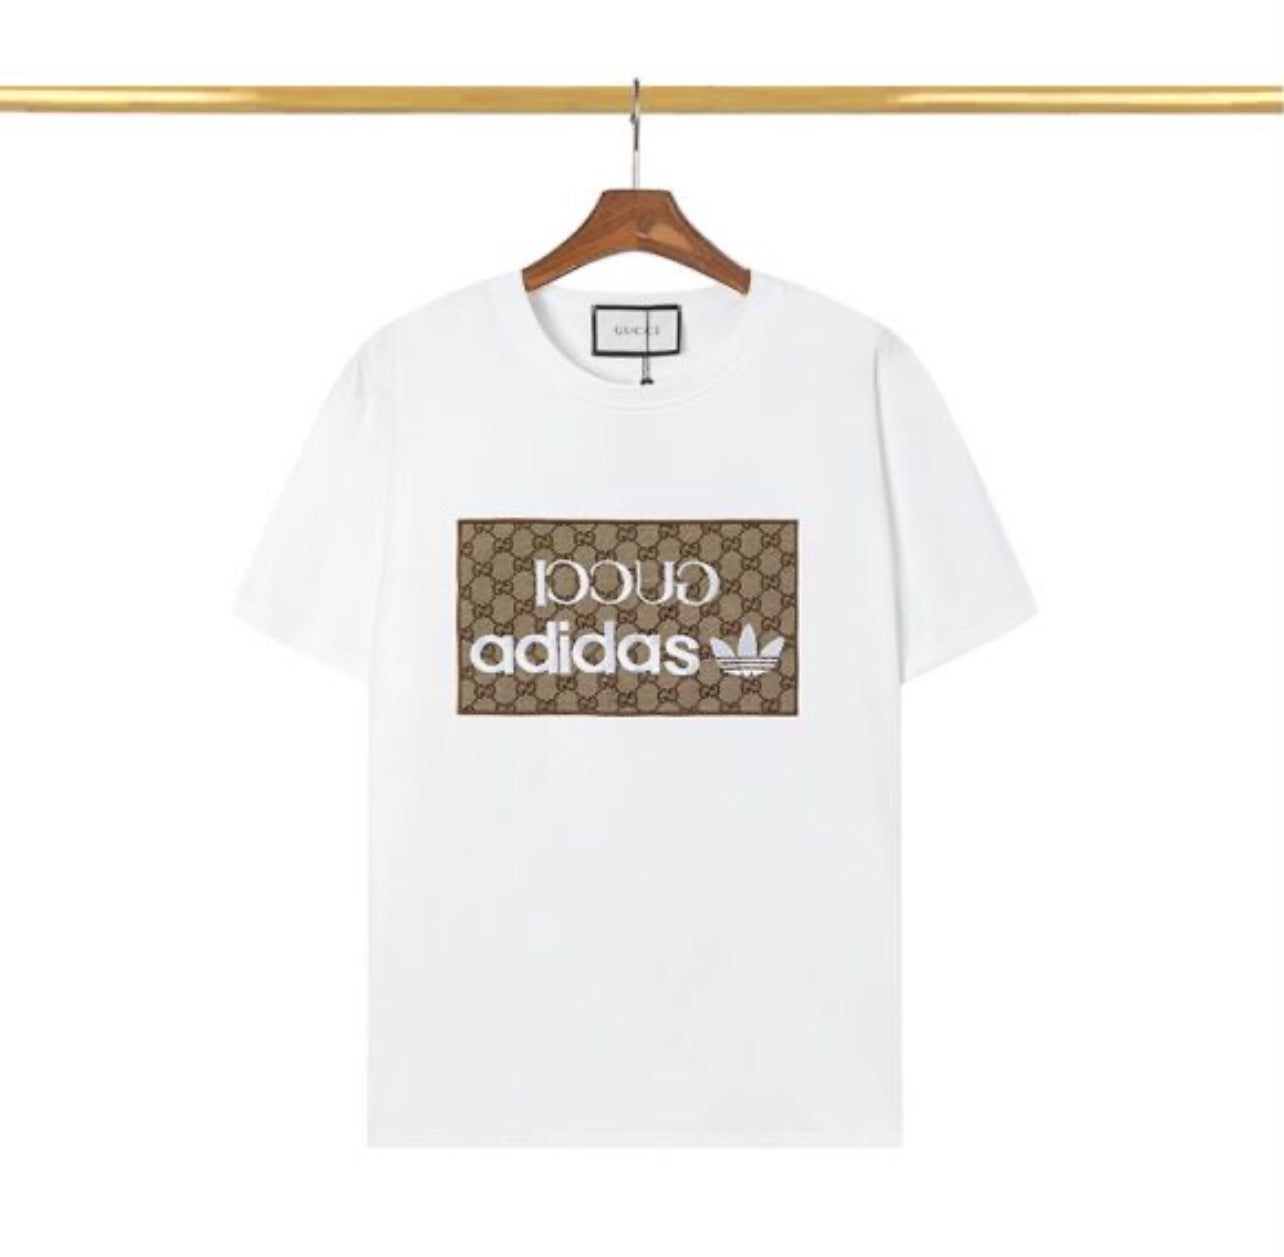 GC t-Shirt Adidas